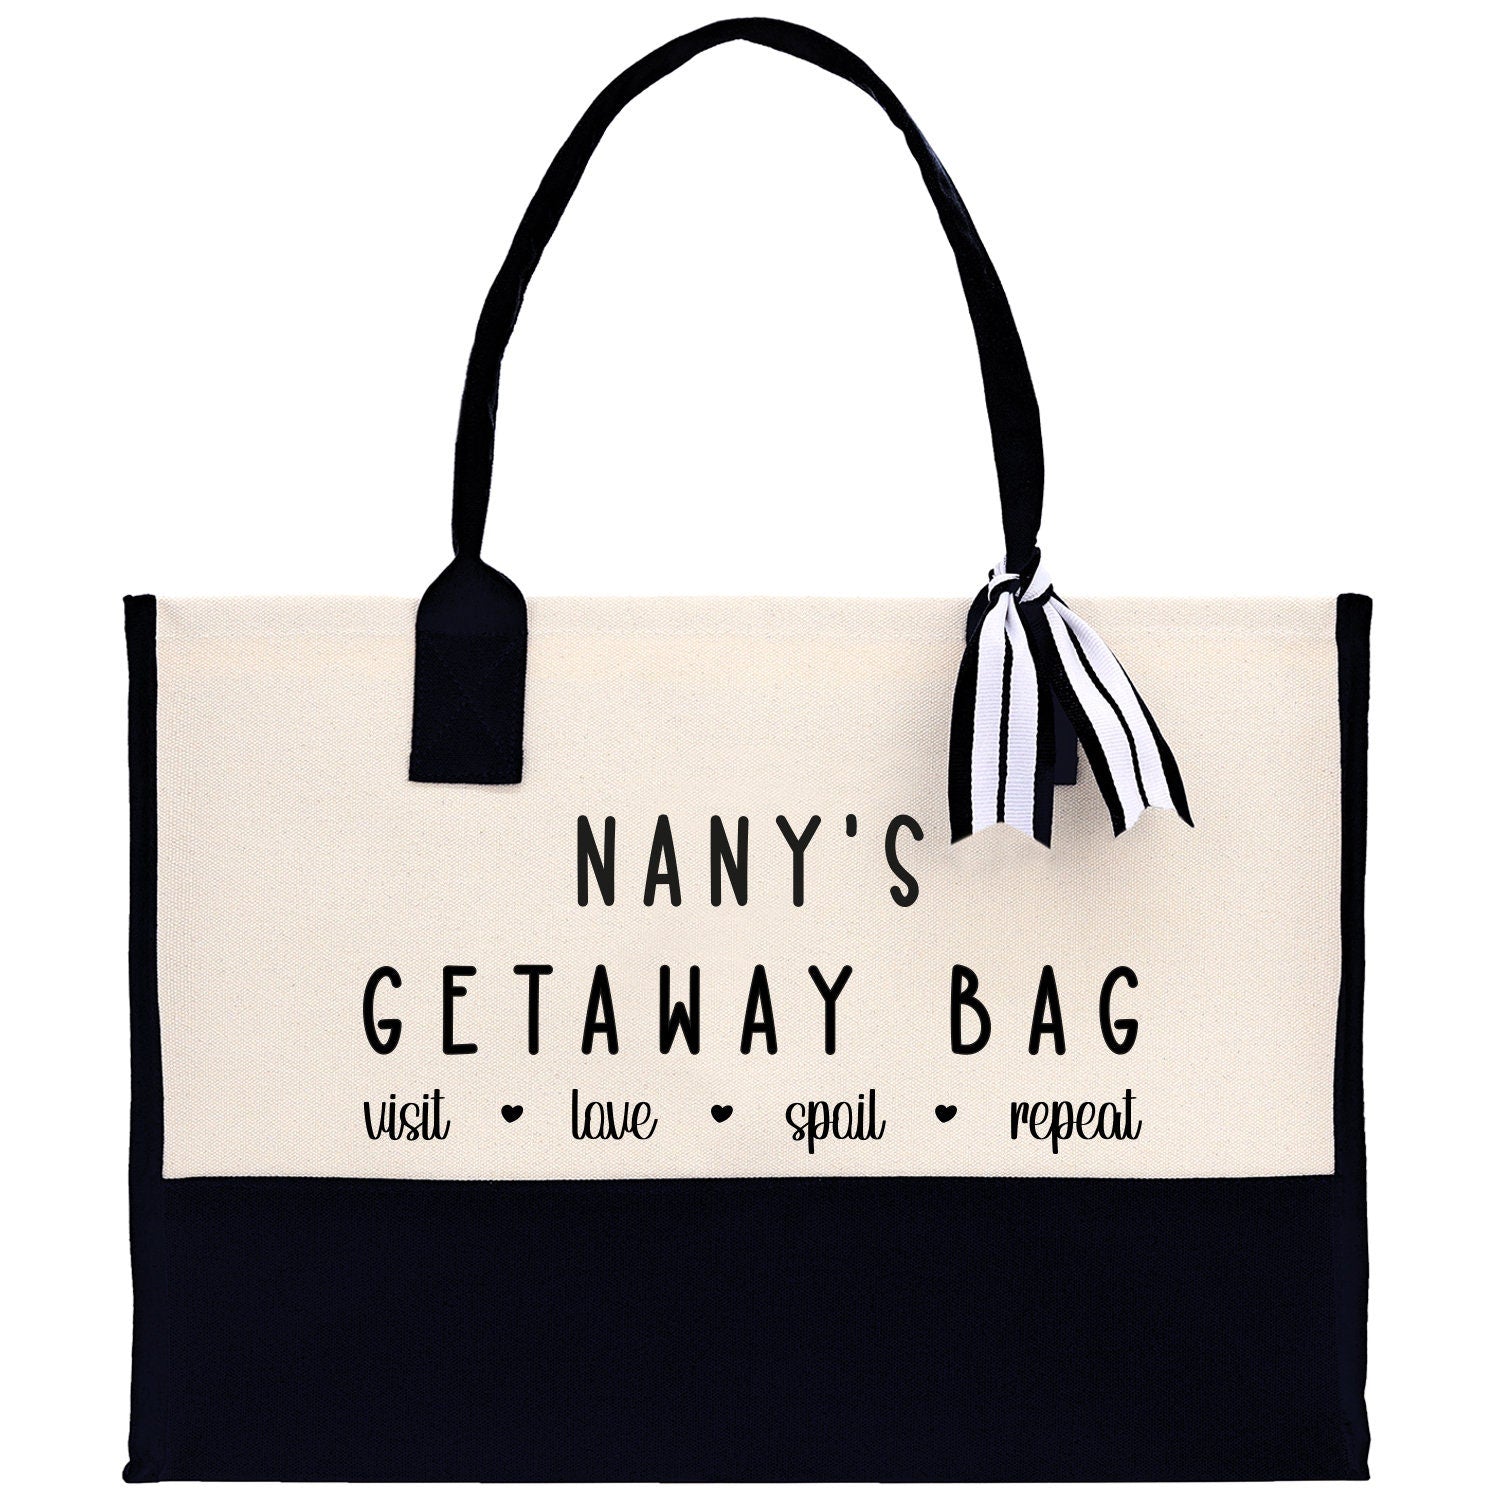 Grandma Tote Bag Grandma's Getaway Bag Grandma Nana Bag Grandma Gift Bag Shopping Bag Mothers Day Gift Live Love Spoil Bag Grandma GM1014